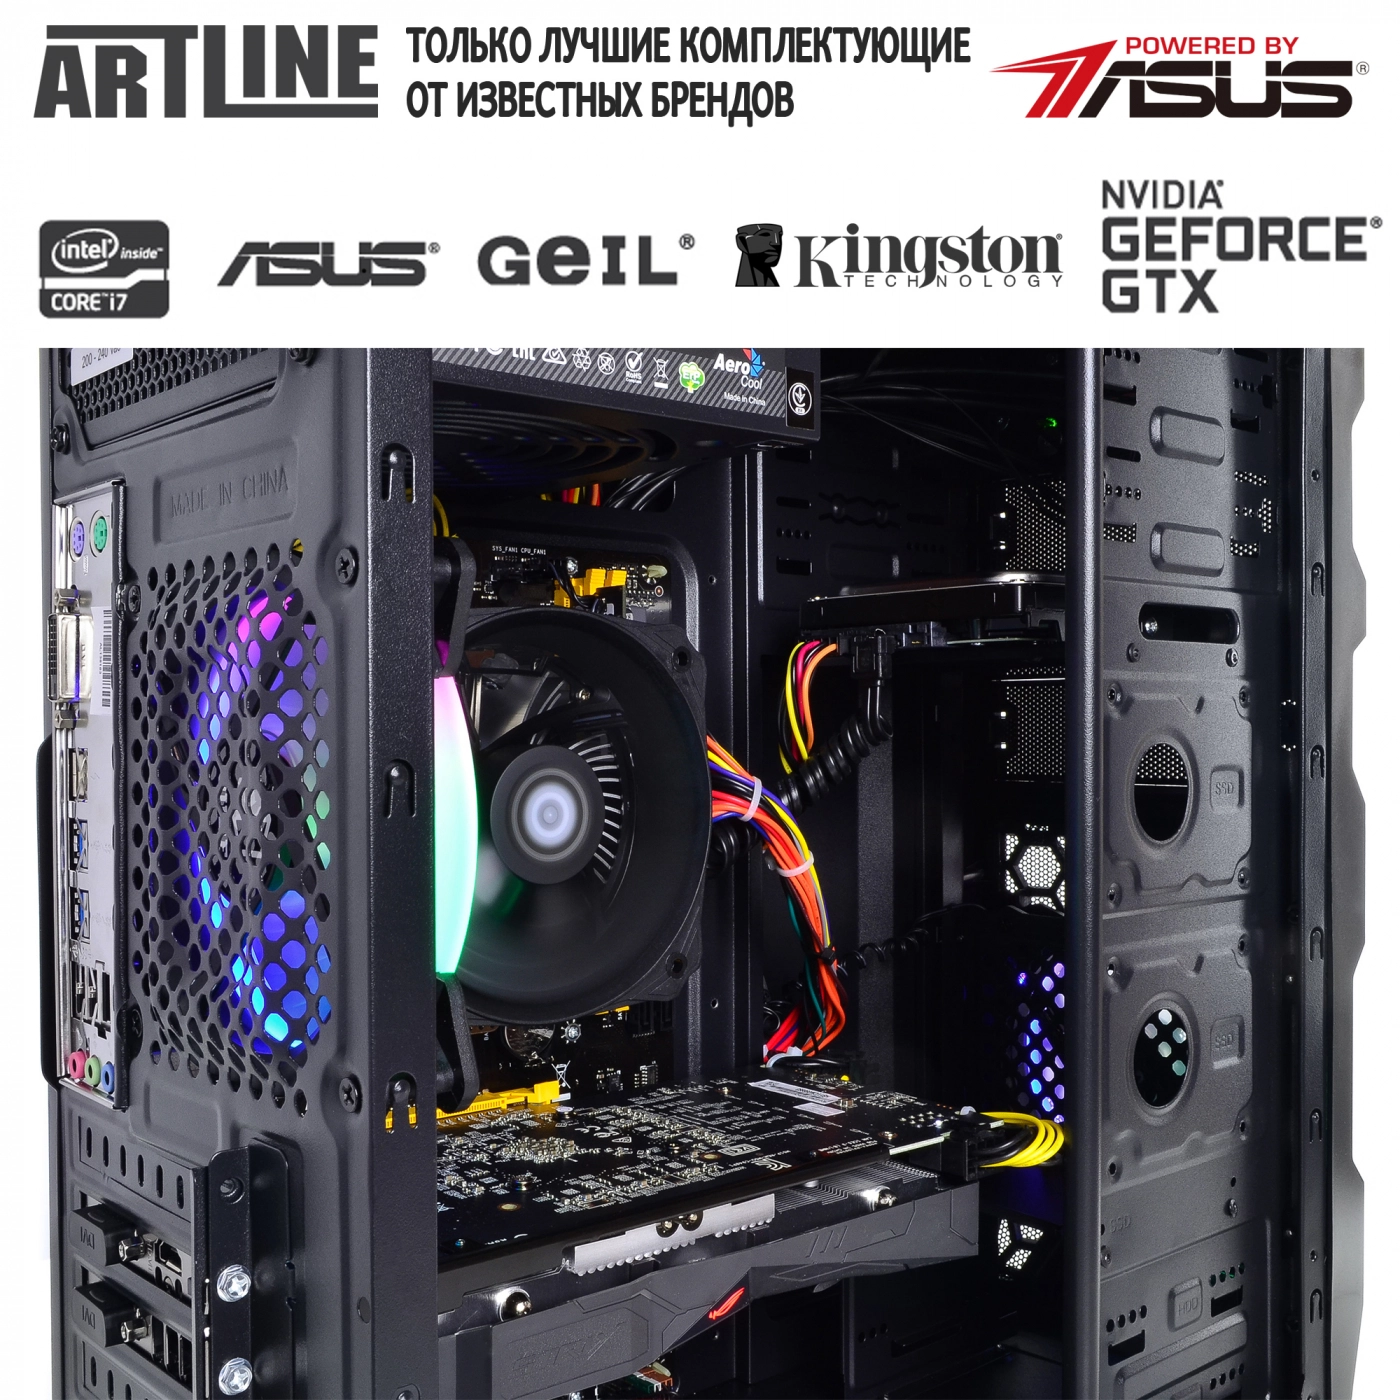 Купить Компьютер ARTLINE Gaming X45v16 - фото 6